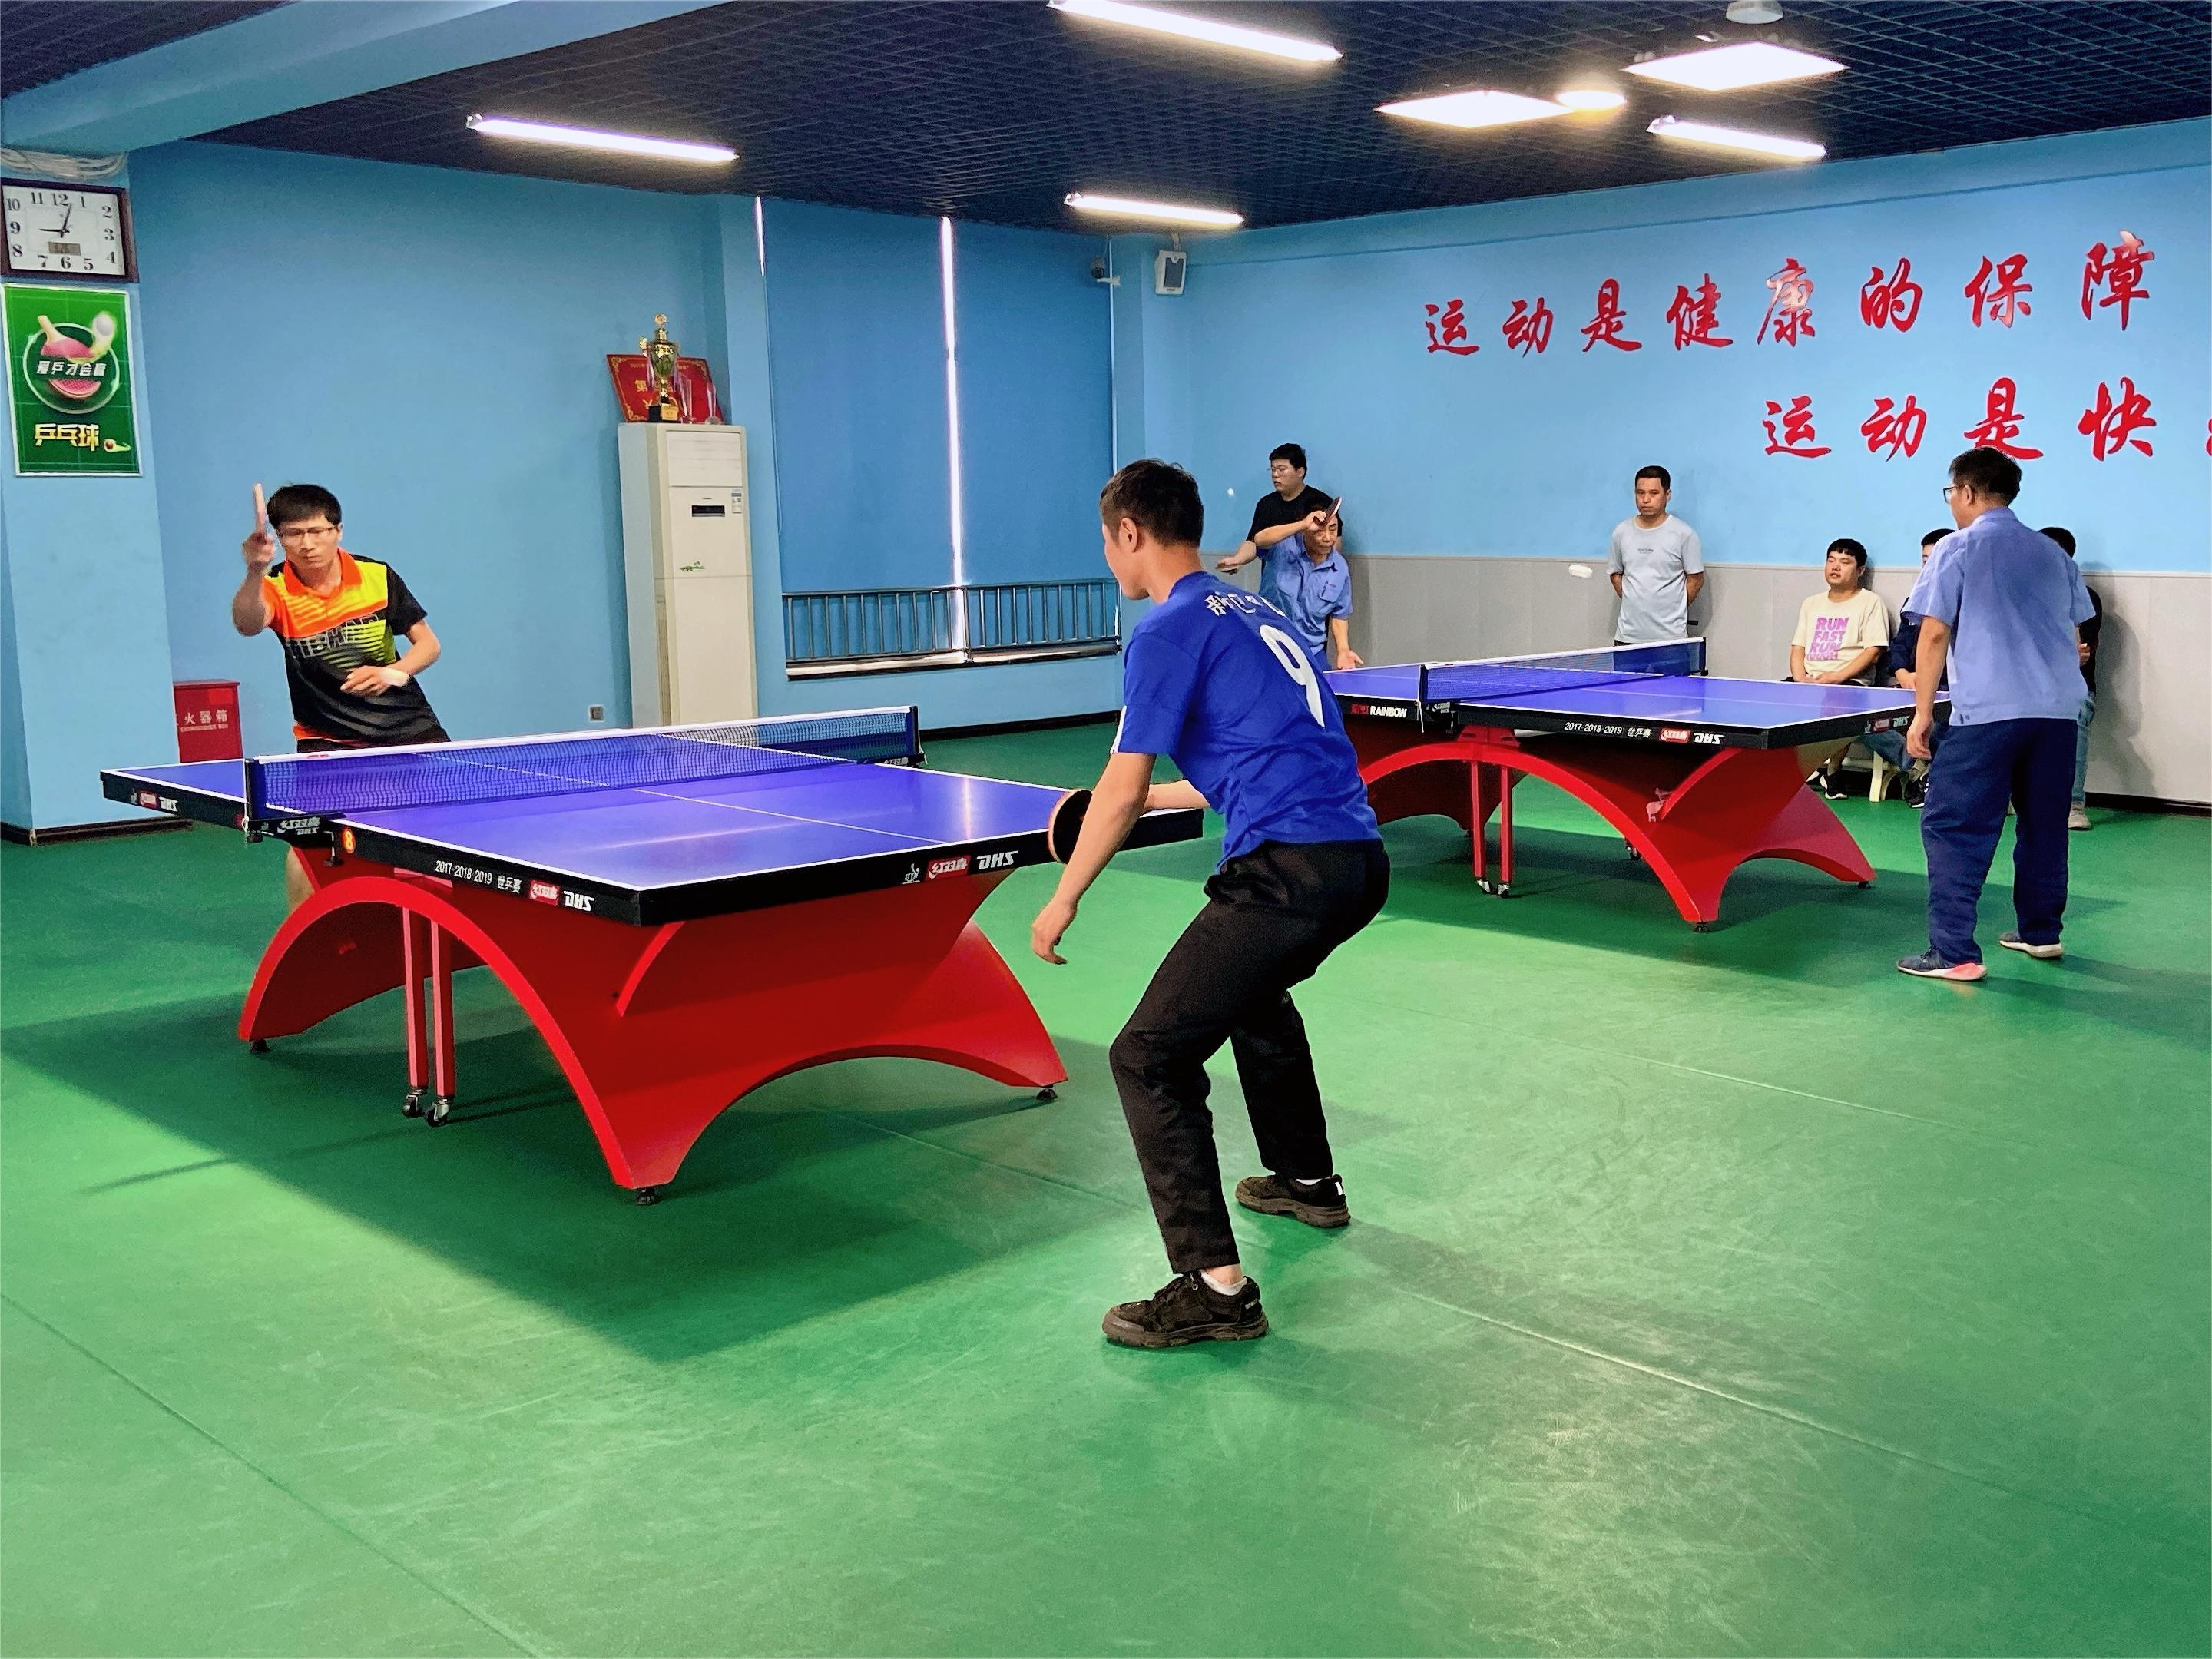 沧州中铁公司“喜迎中秋、欢度国庆”组织开展第四届室内体育比赛